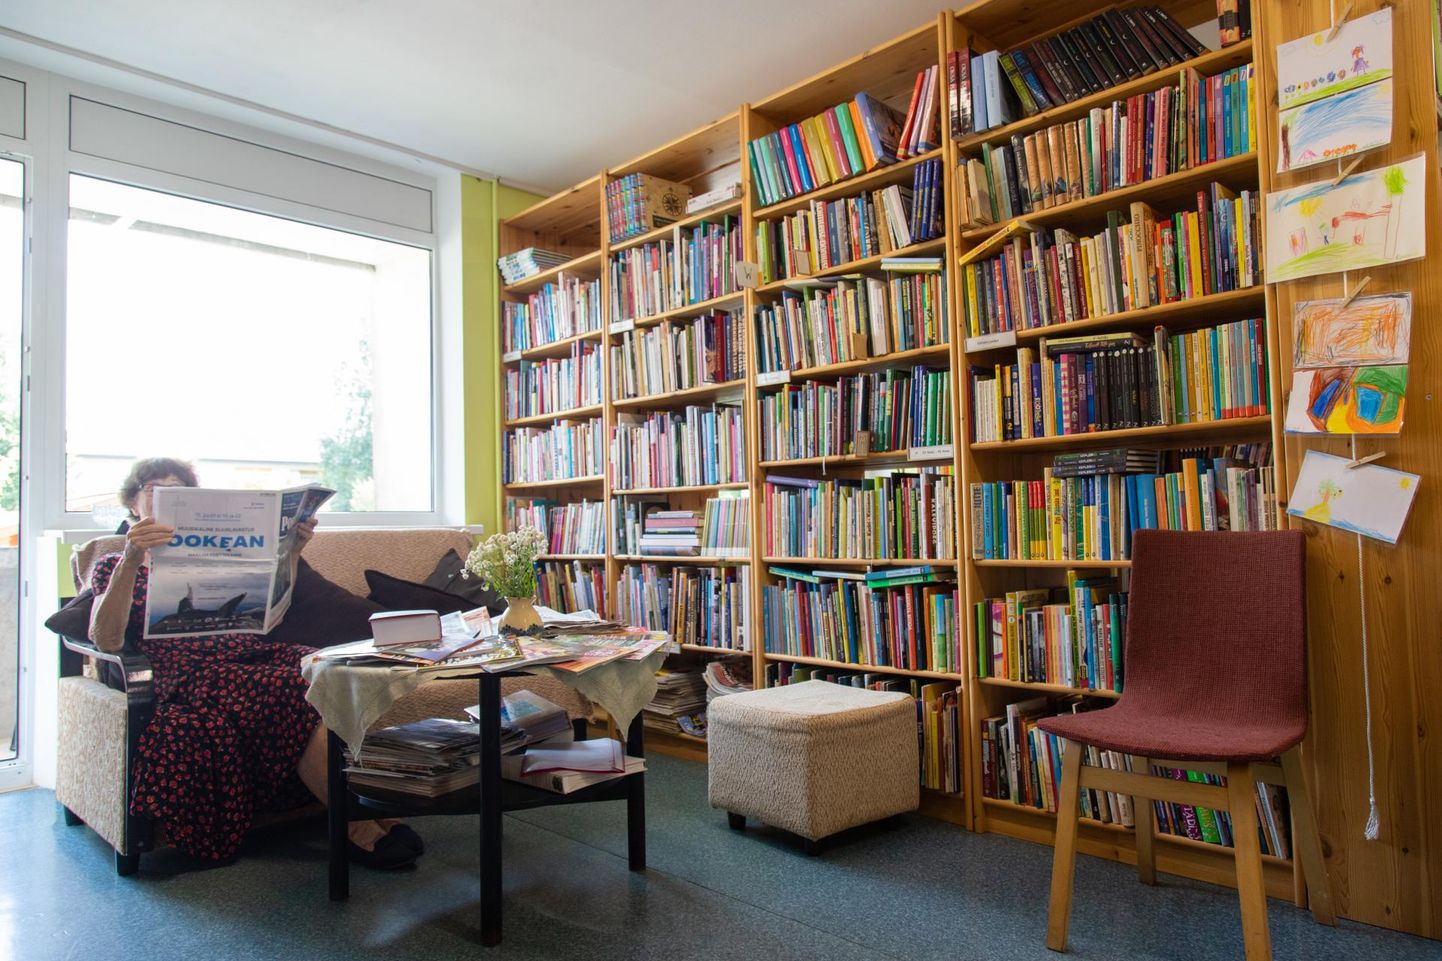 Õisu väiksele kogukonnale on raamatukogu tähtis paik, kus aega veeta. Ruumi napib seal aga juba praegugi.